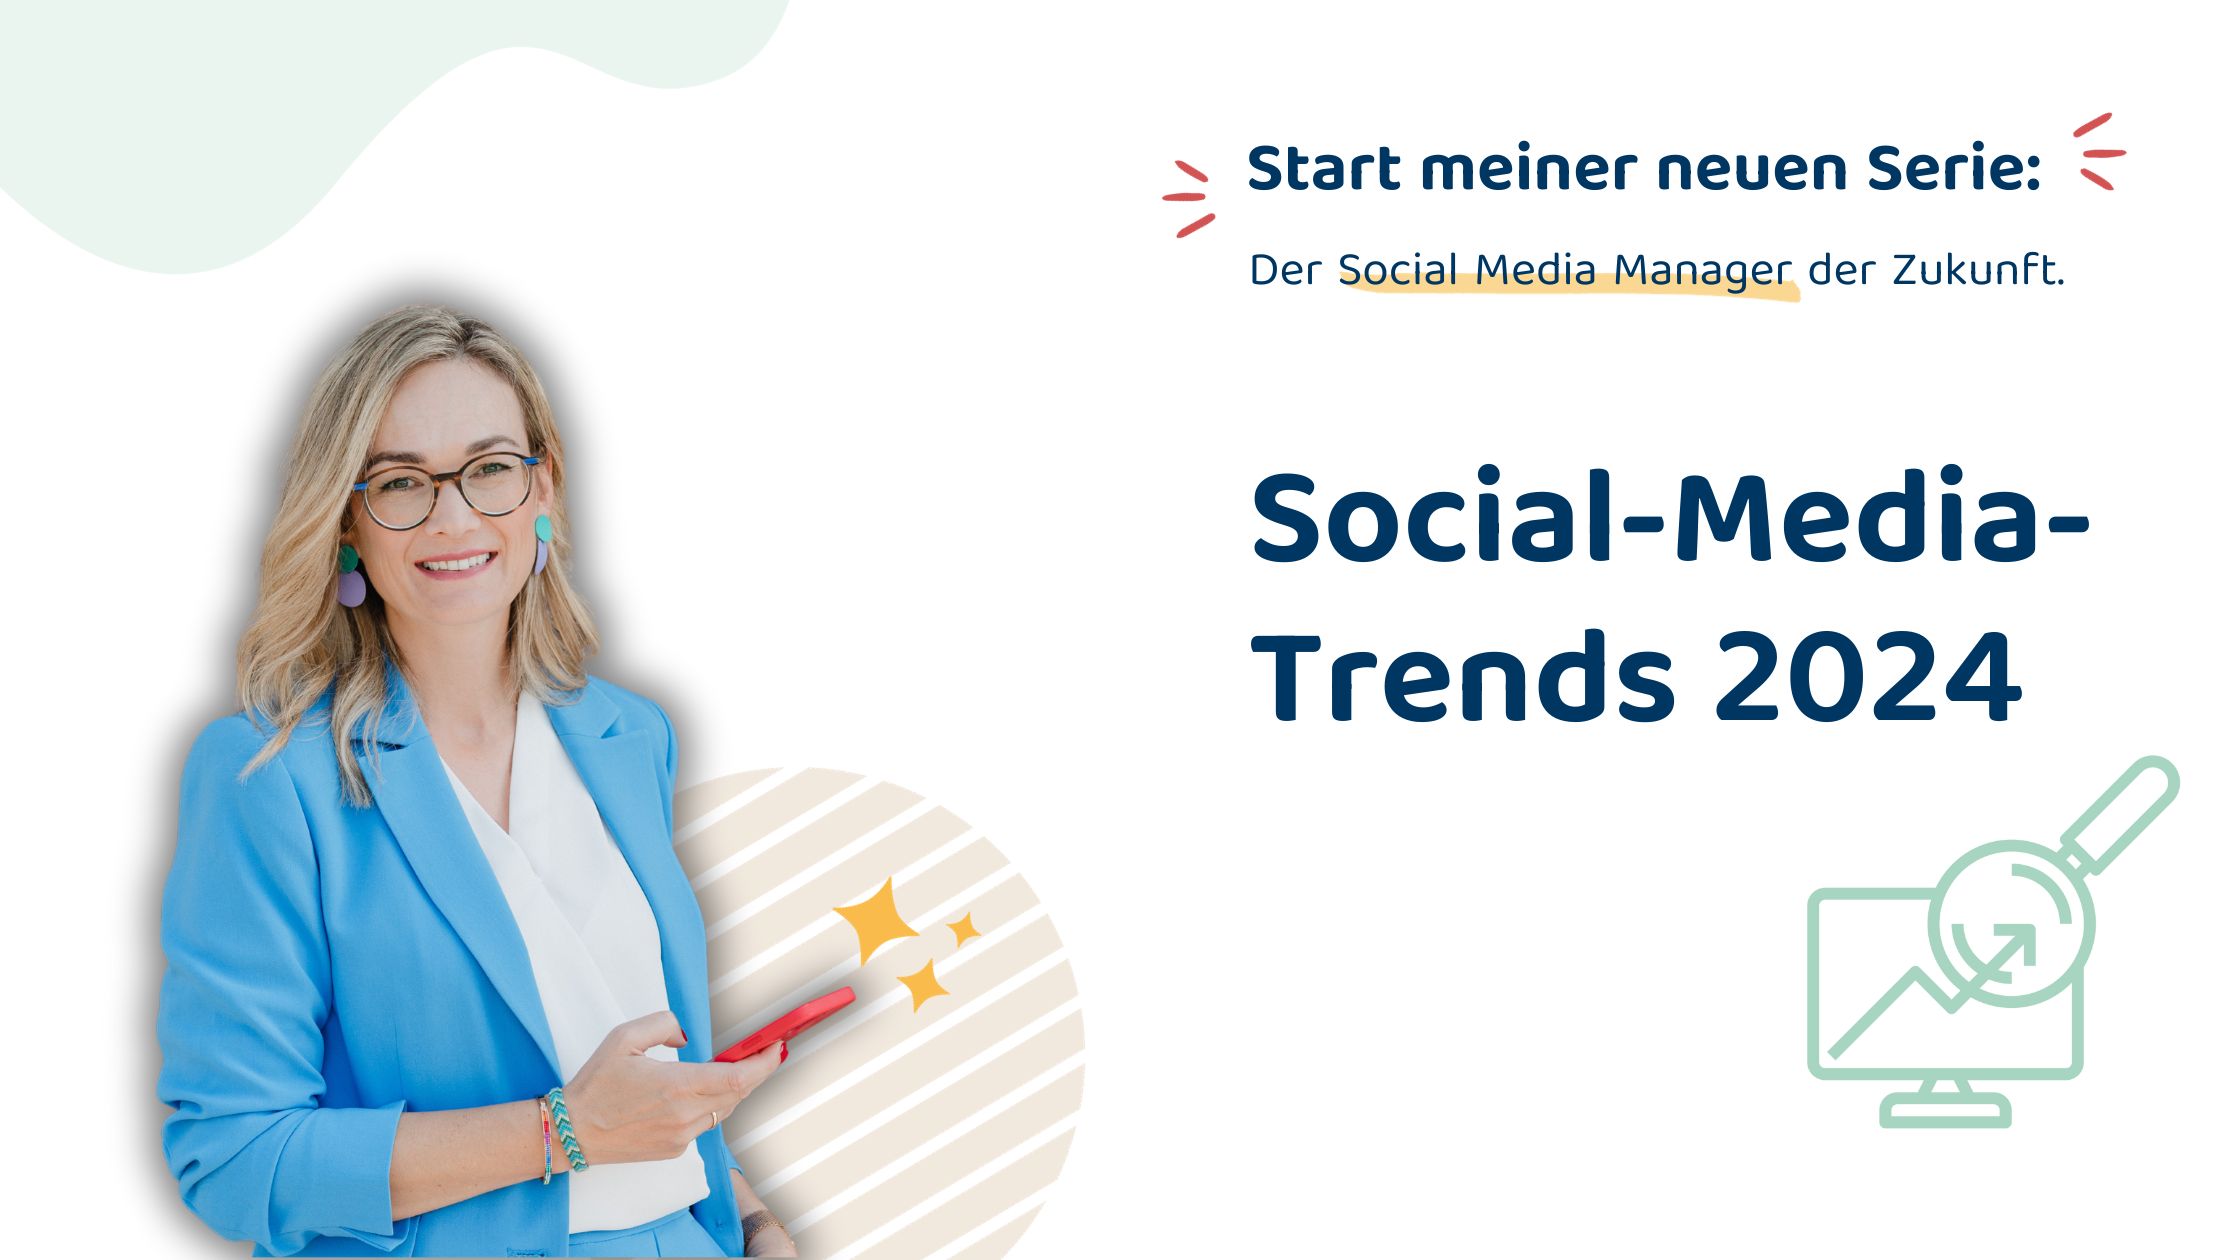 Social-Media-Trends 2024_Socia Media Manager der Zukunft